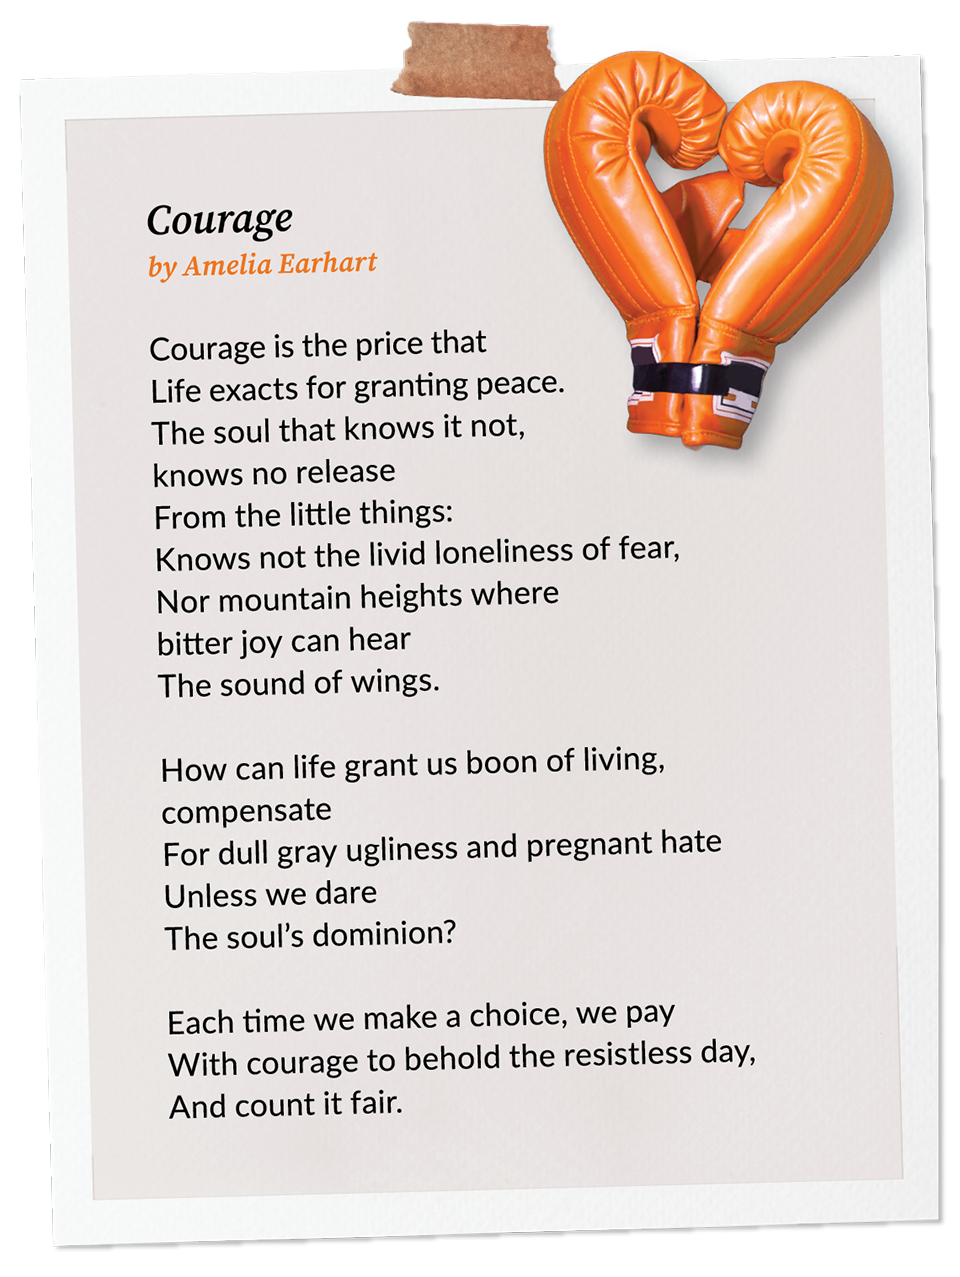 Courage, by Amelia Earhart